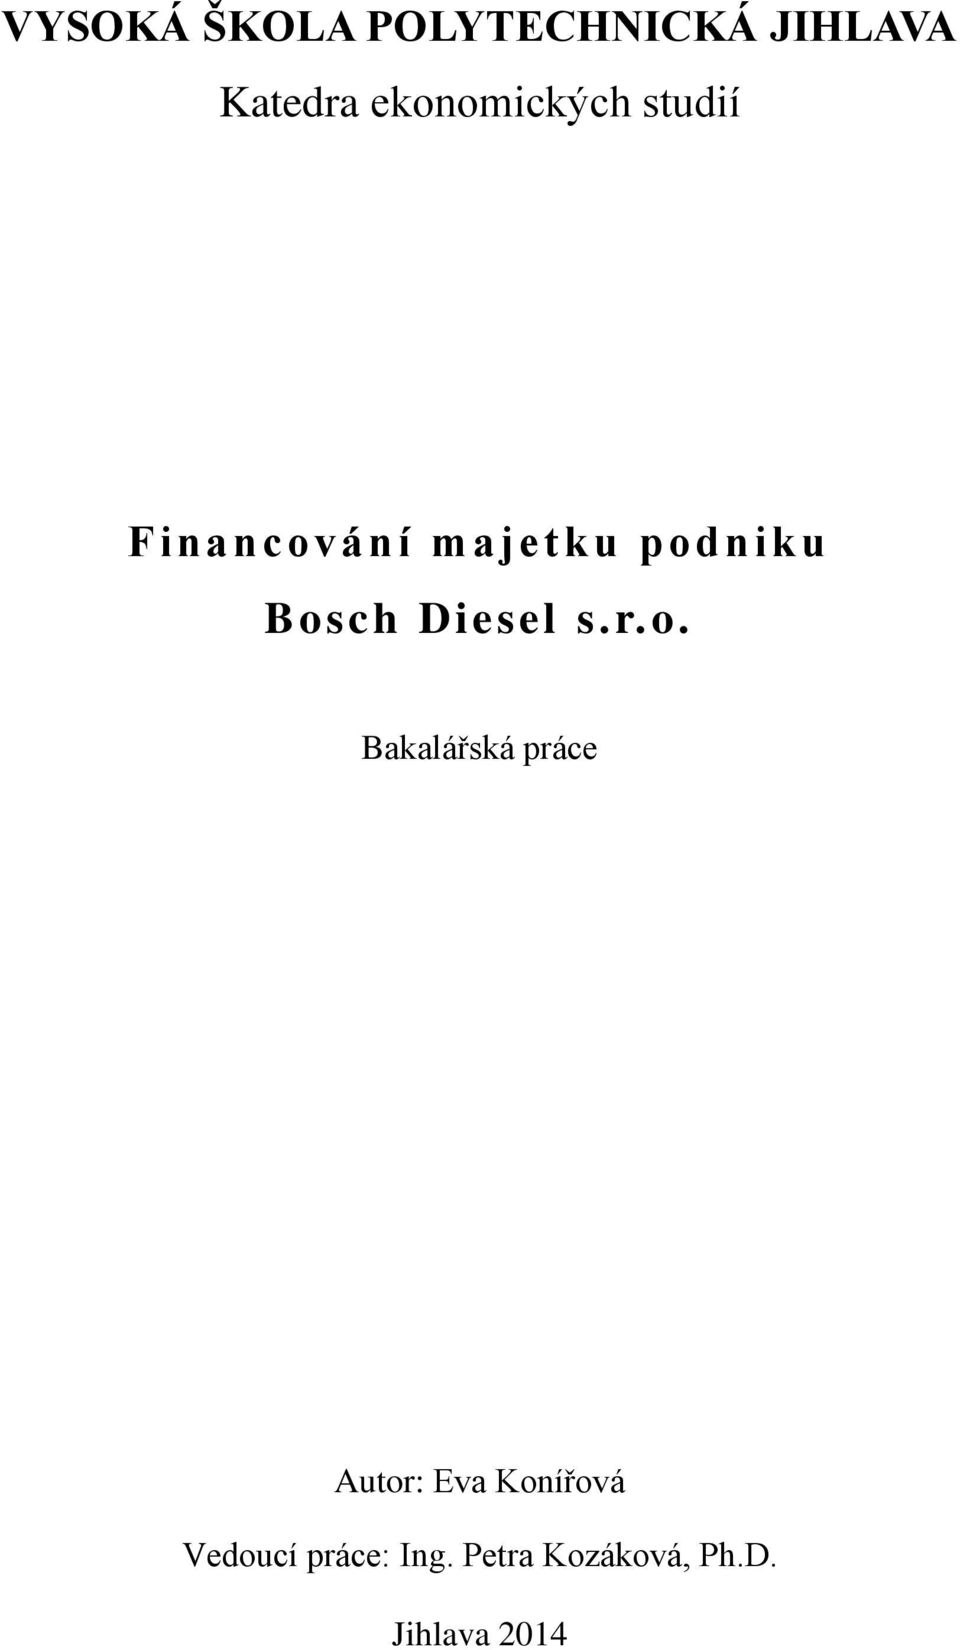 Bosch Diesel s.r.o. Bakalářská práce Autor: Eva